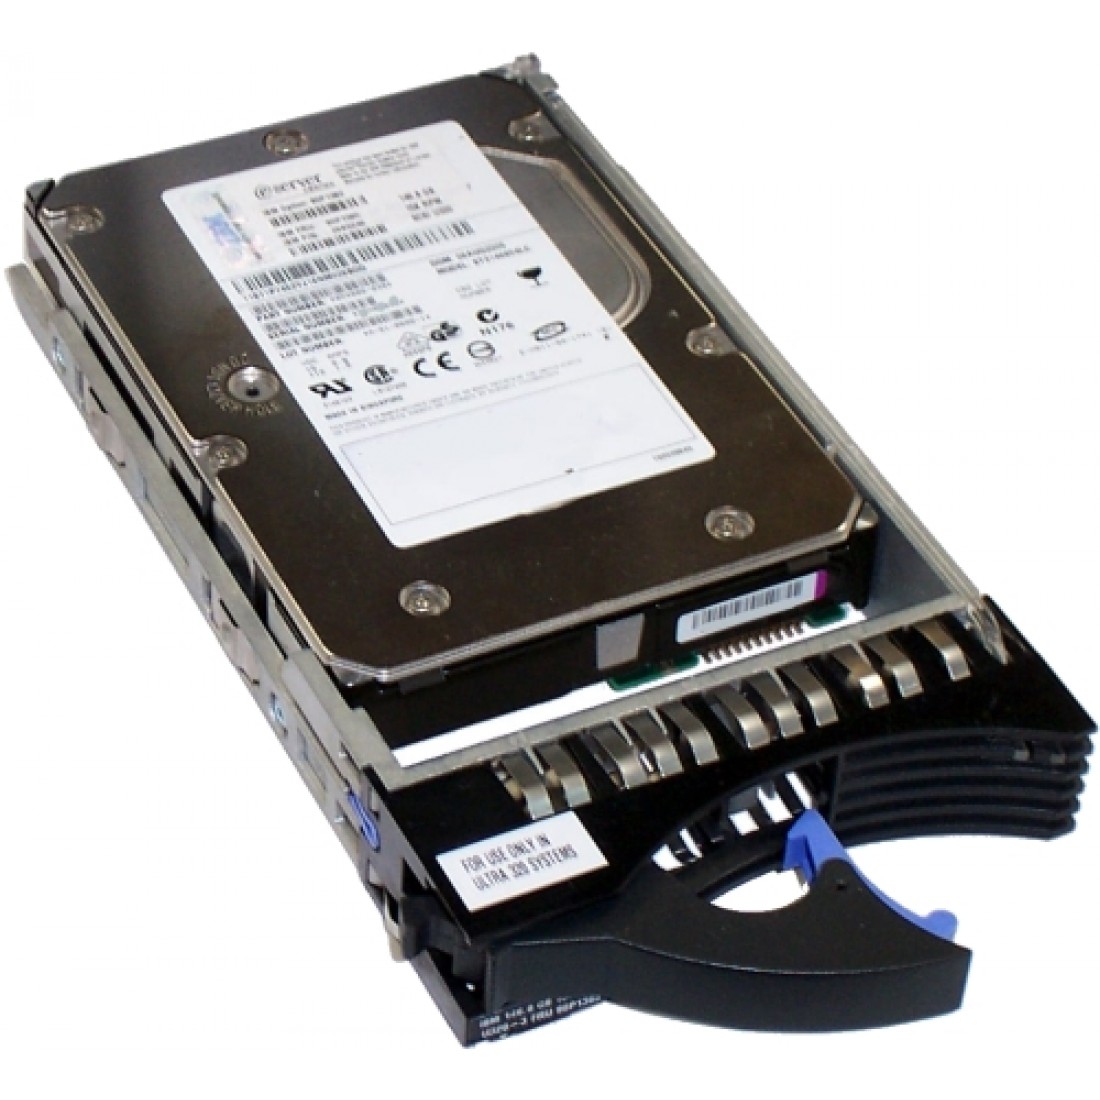 - i Model E8A 300 GB 10,000 RPM Ultra320 SCSI Disk